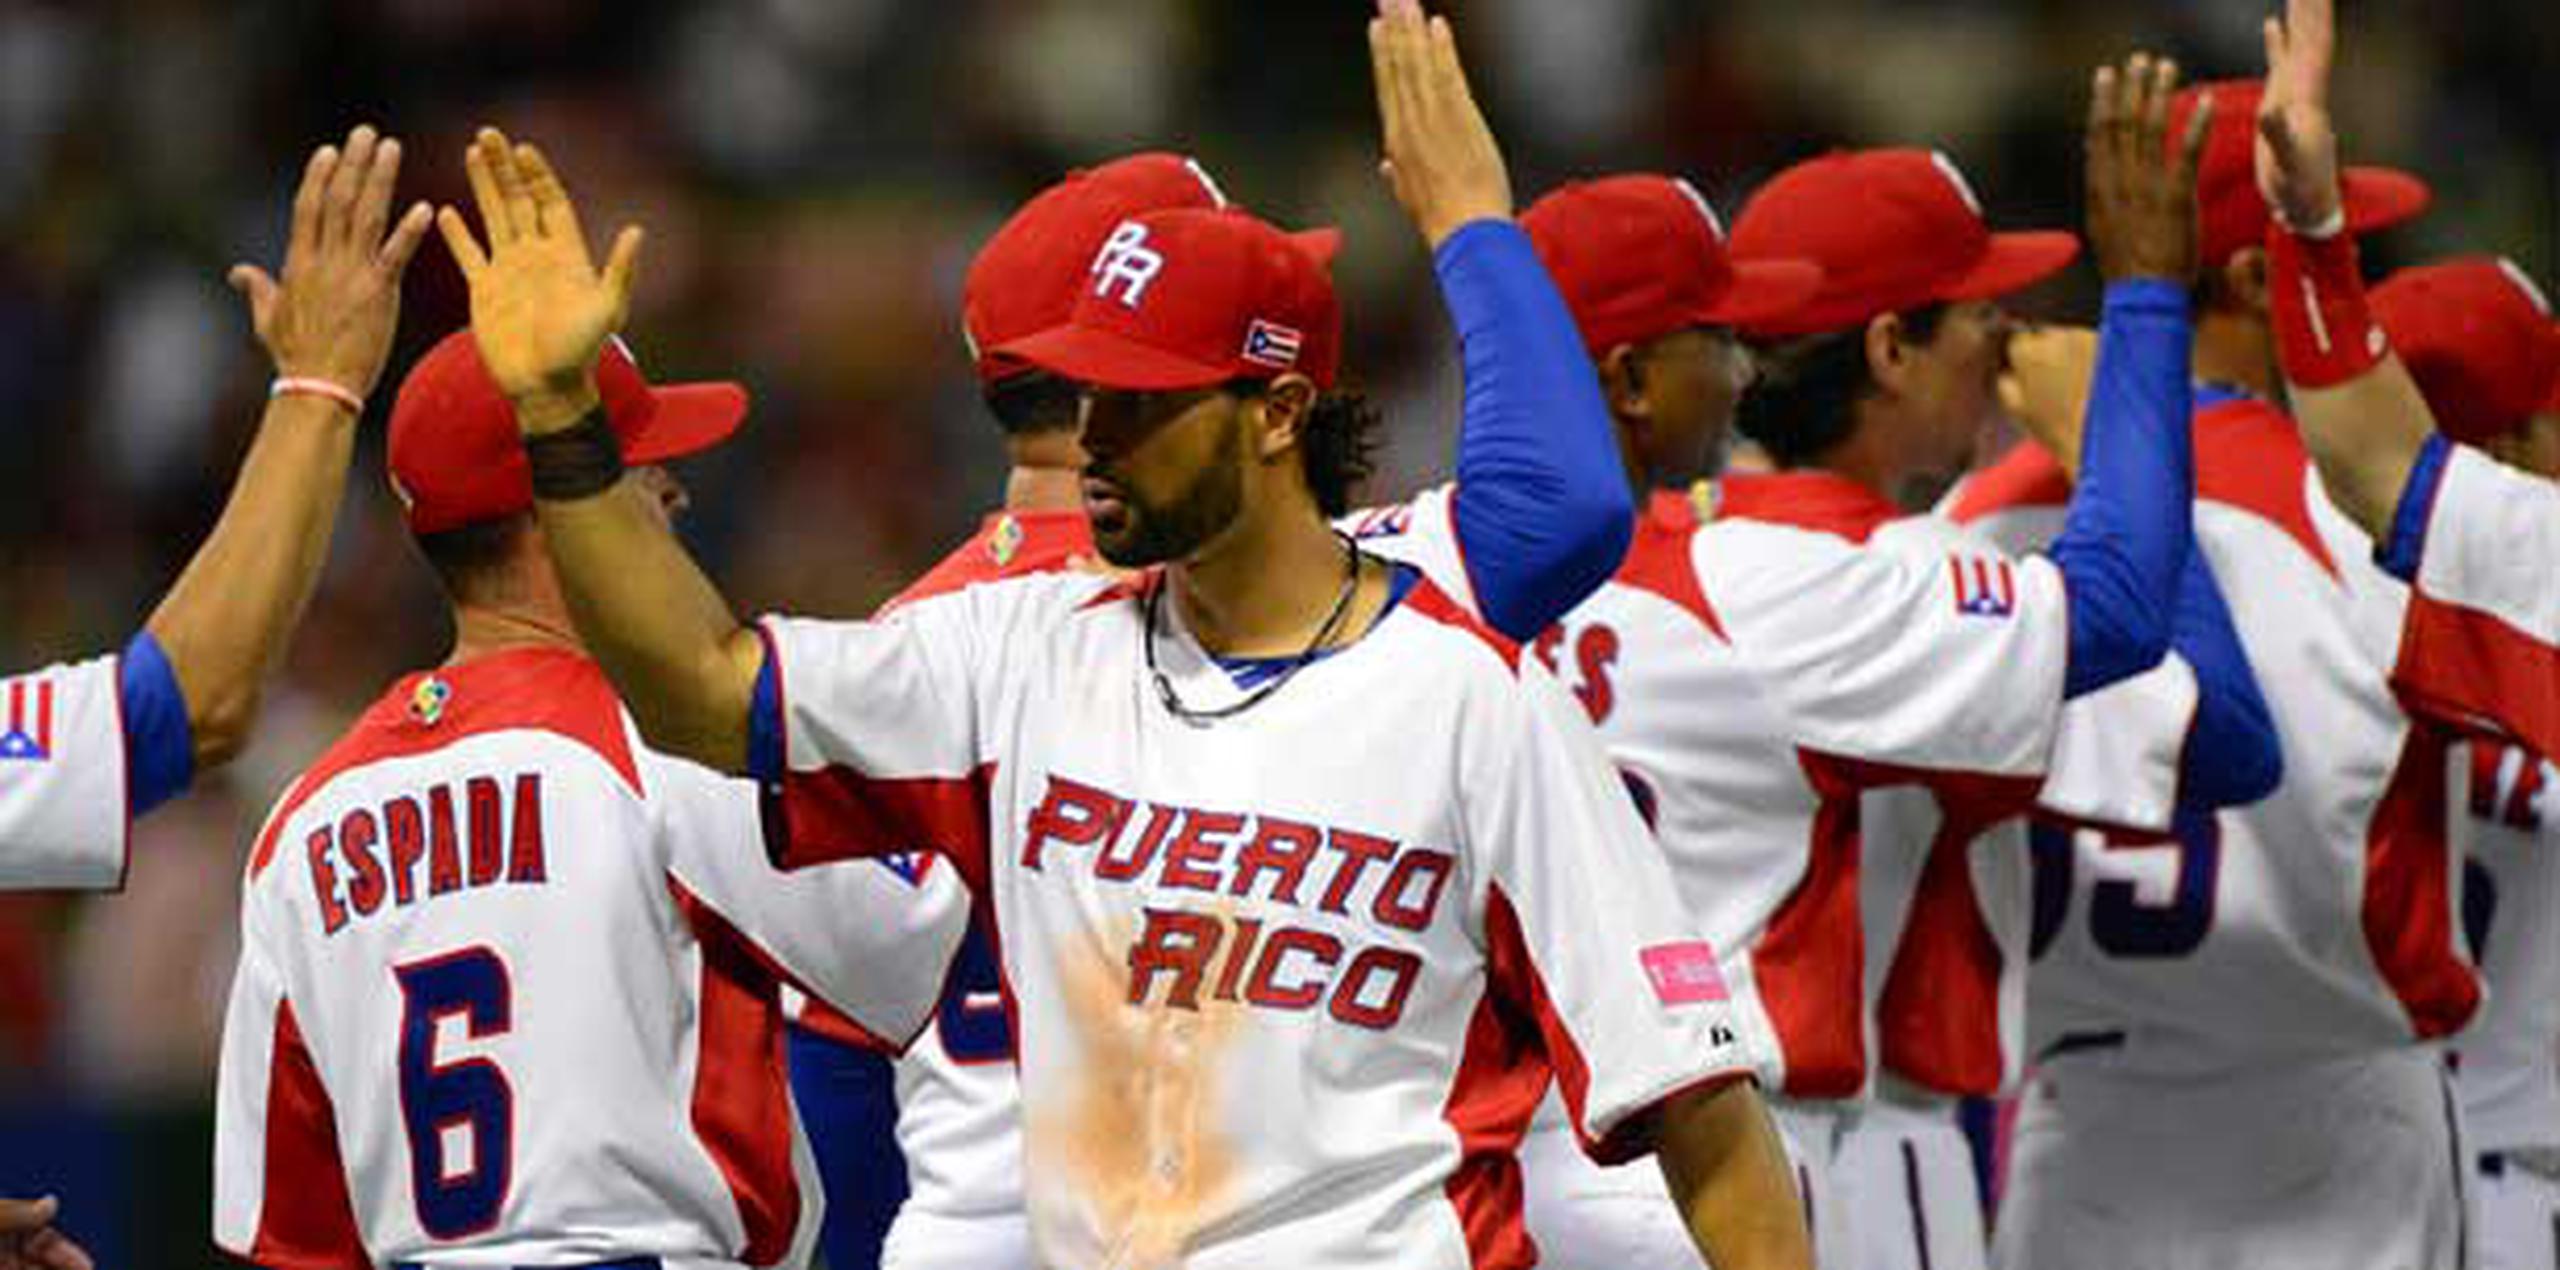 Puerto Rico inició su participación en el Grupo C del Clásico Mundial de Béisbol con una victoria 3-0 sobre España. (carlos.giusti@gfrmedia.com)